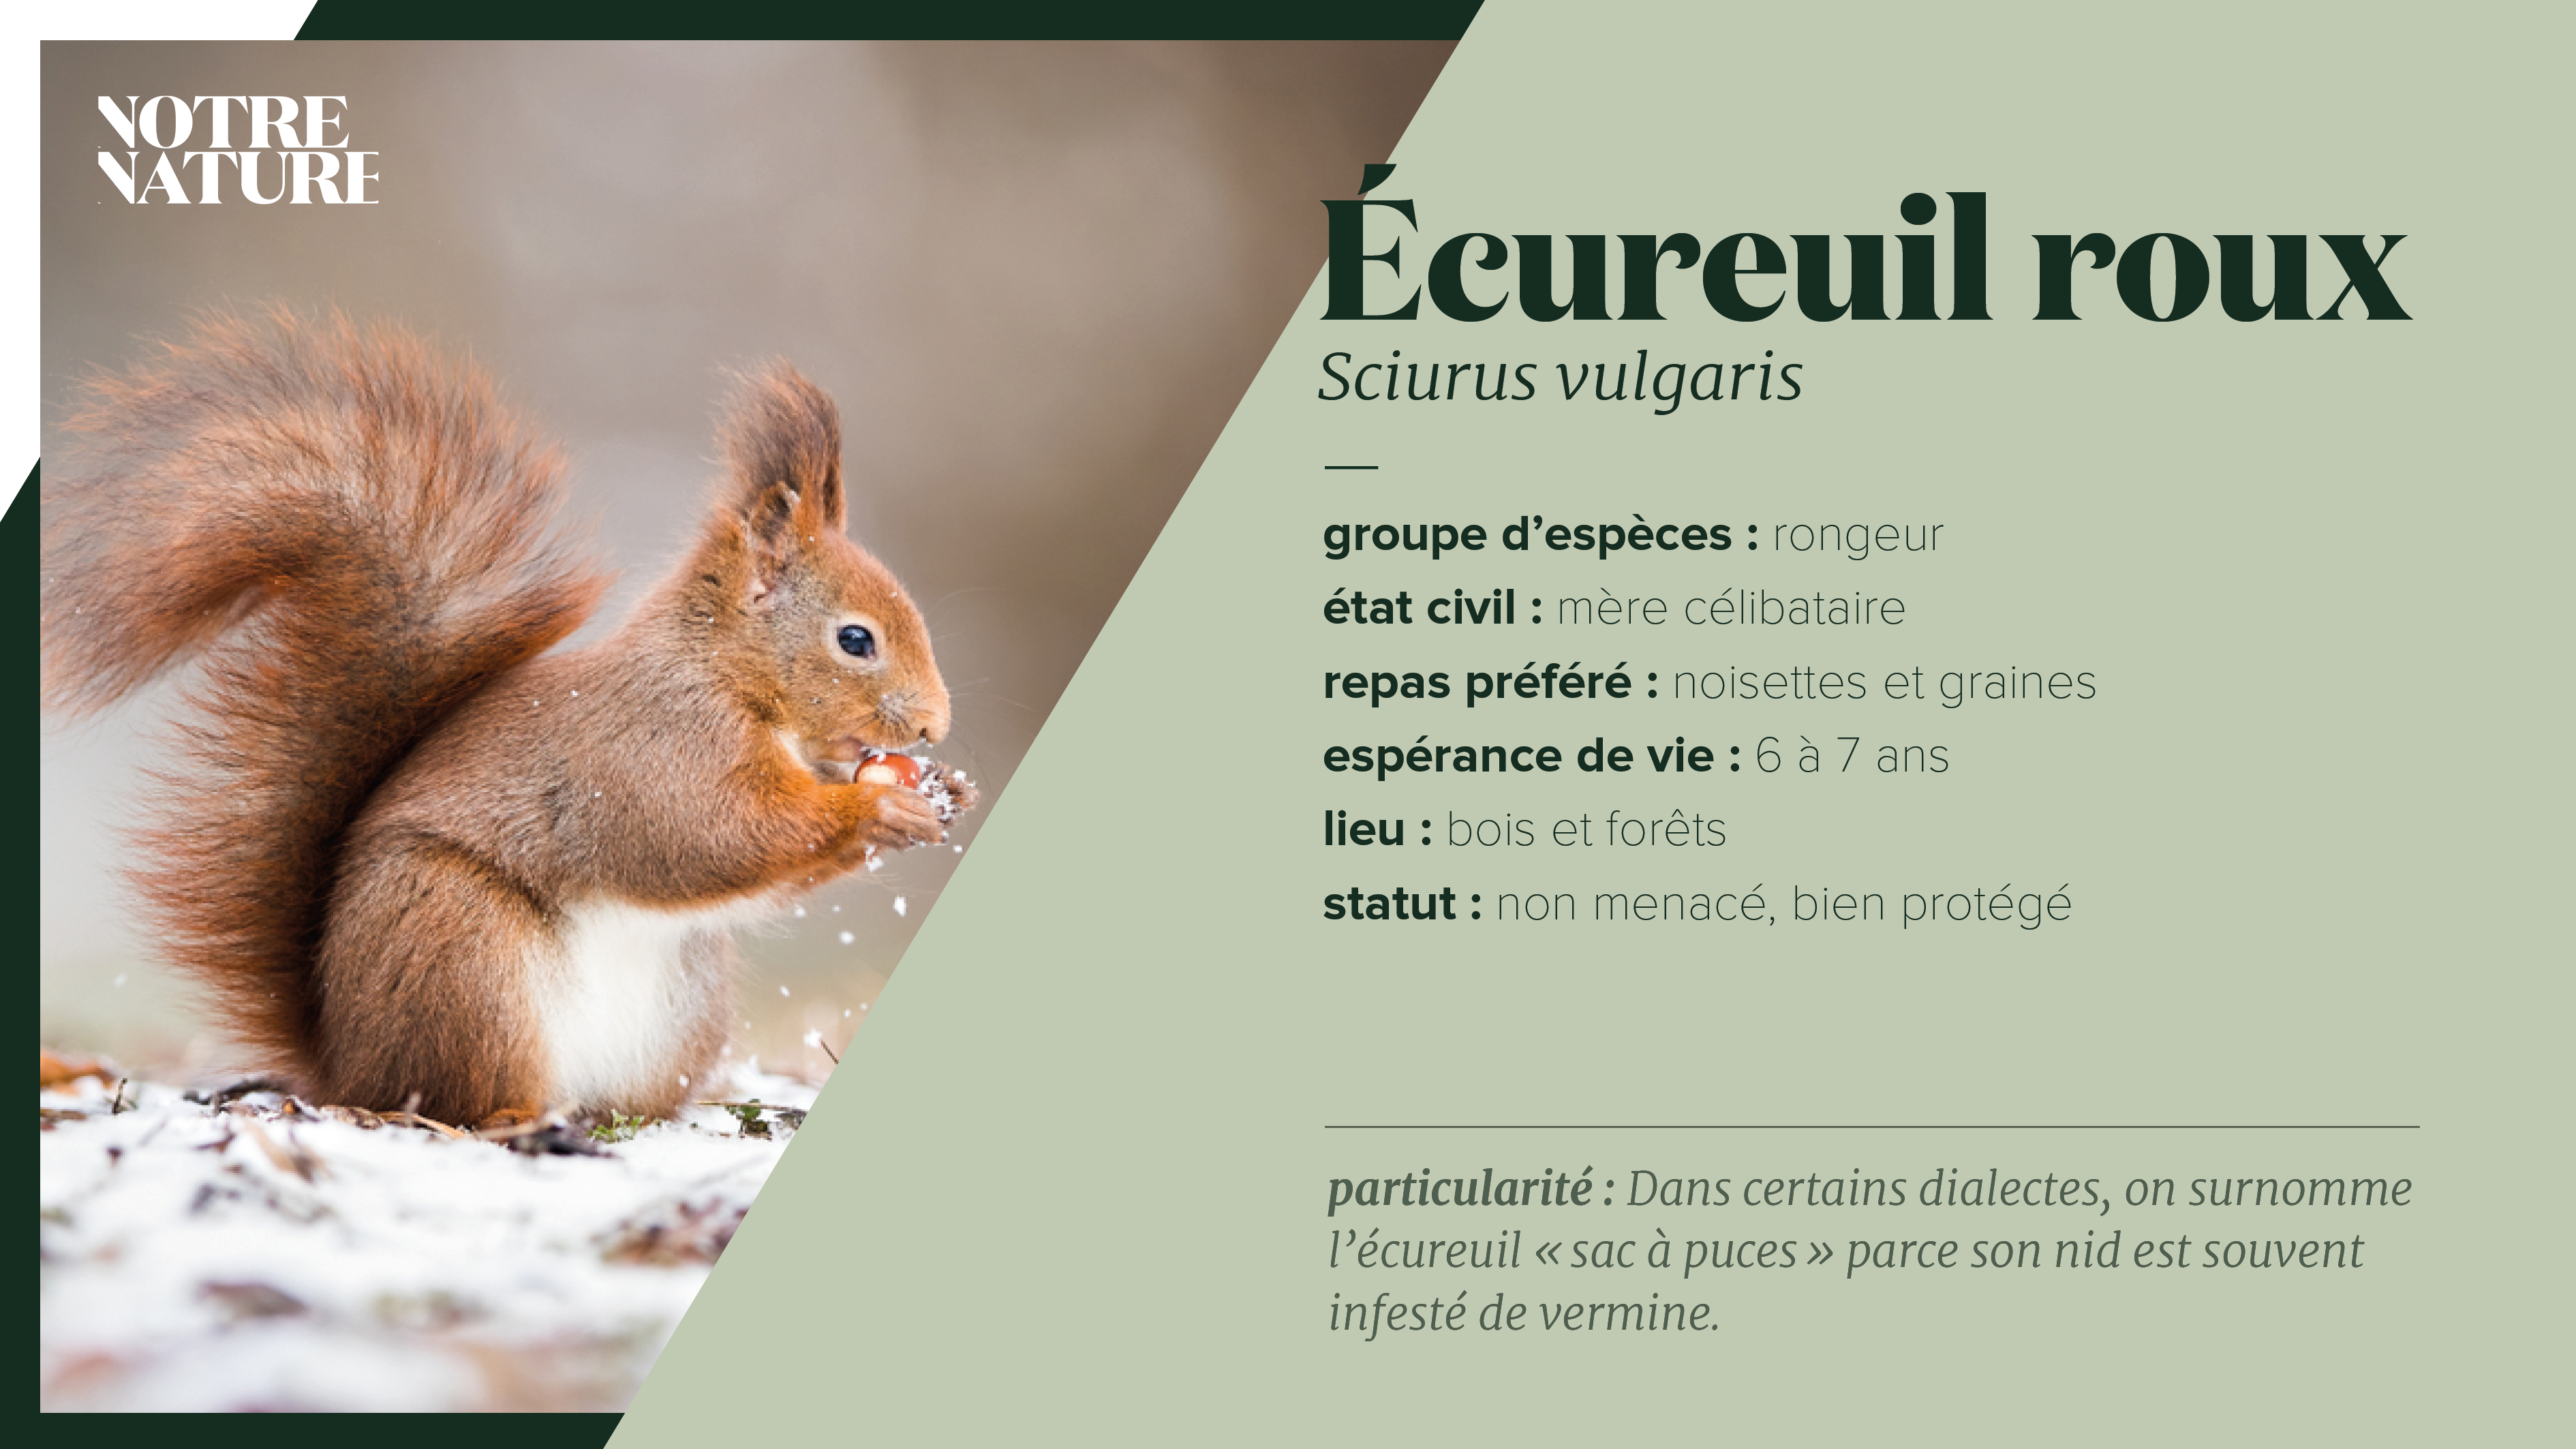 Écureuil roux - Notre Nature